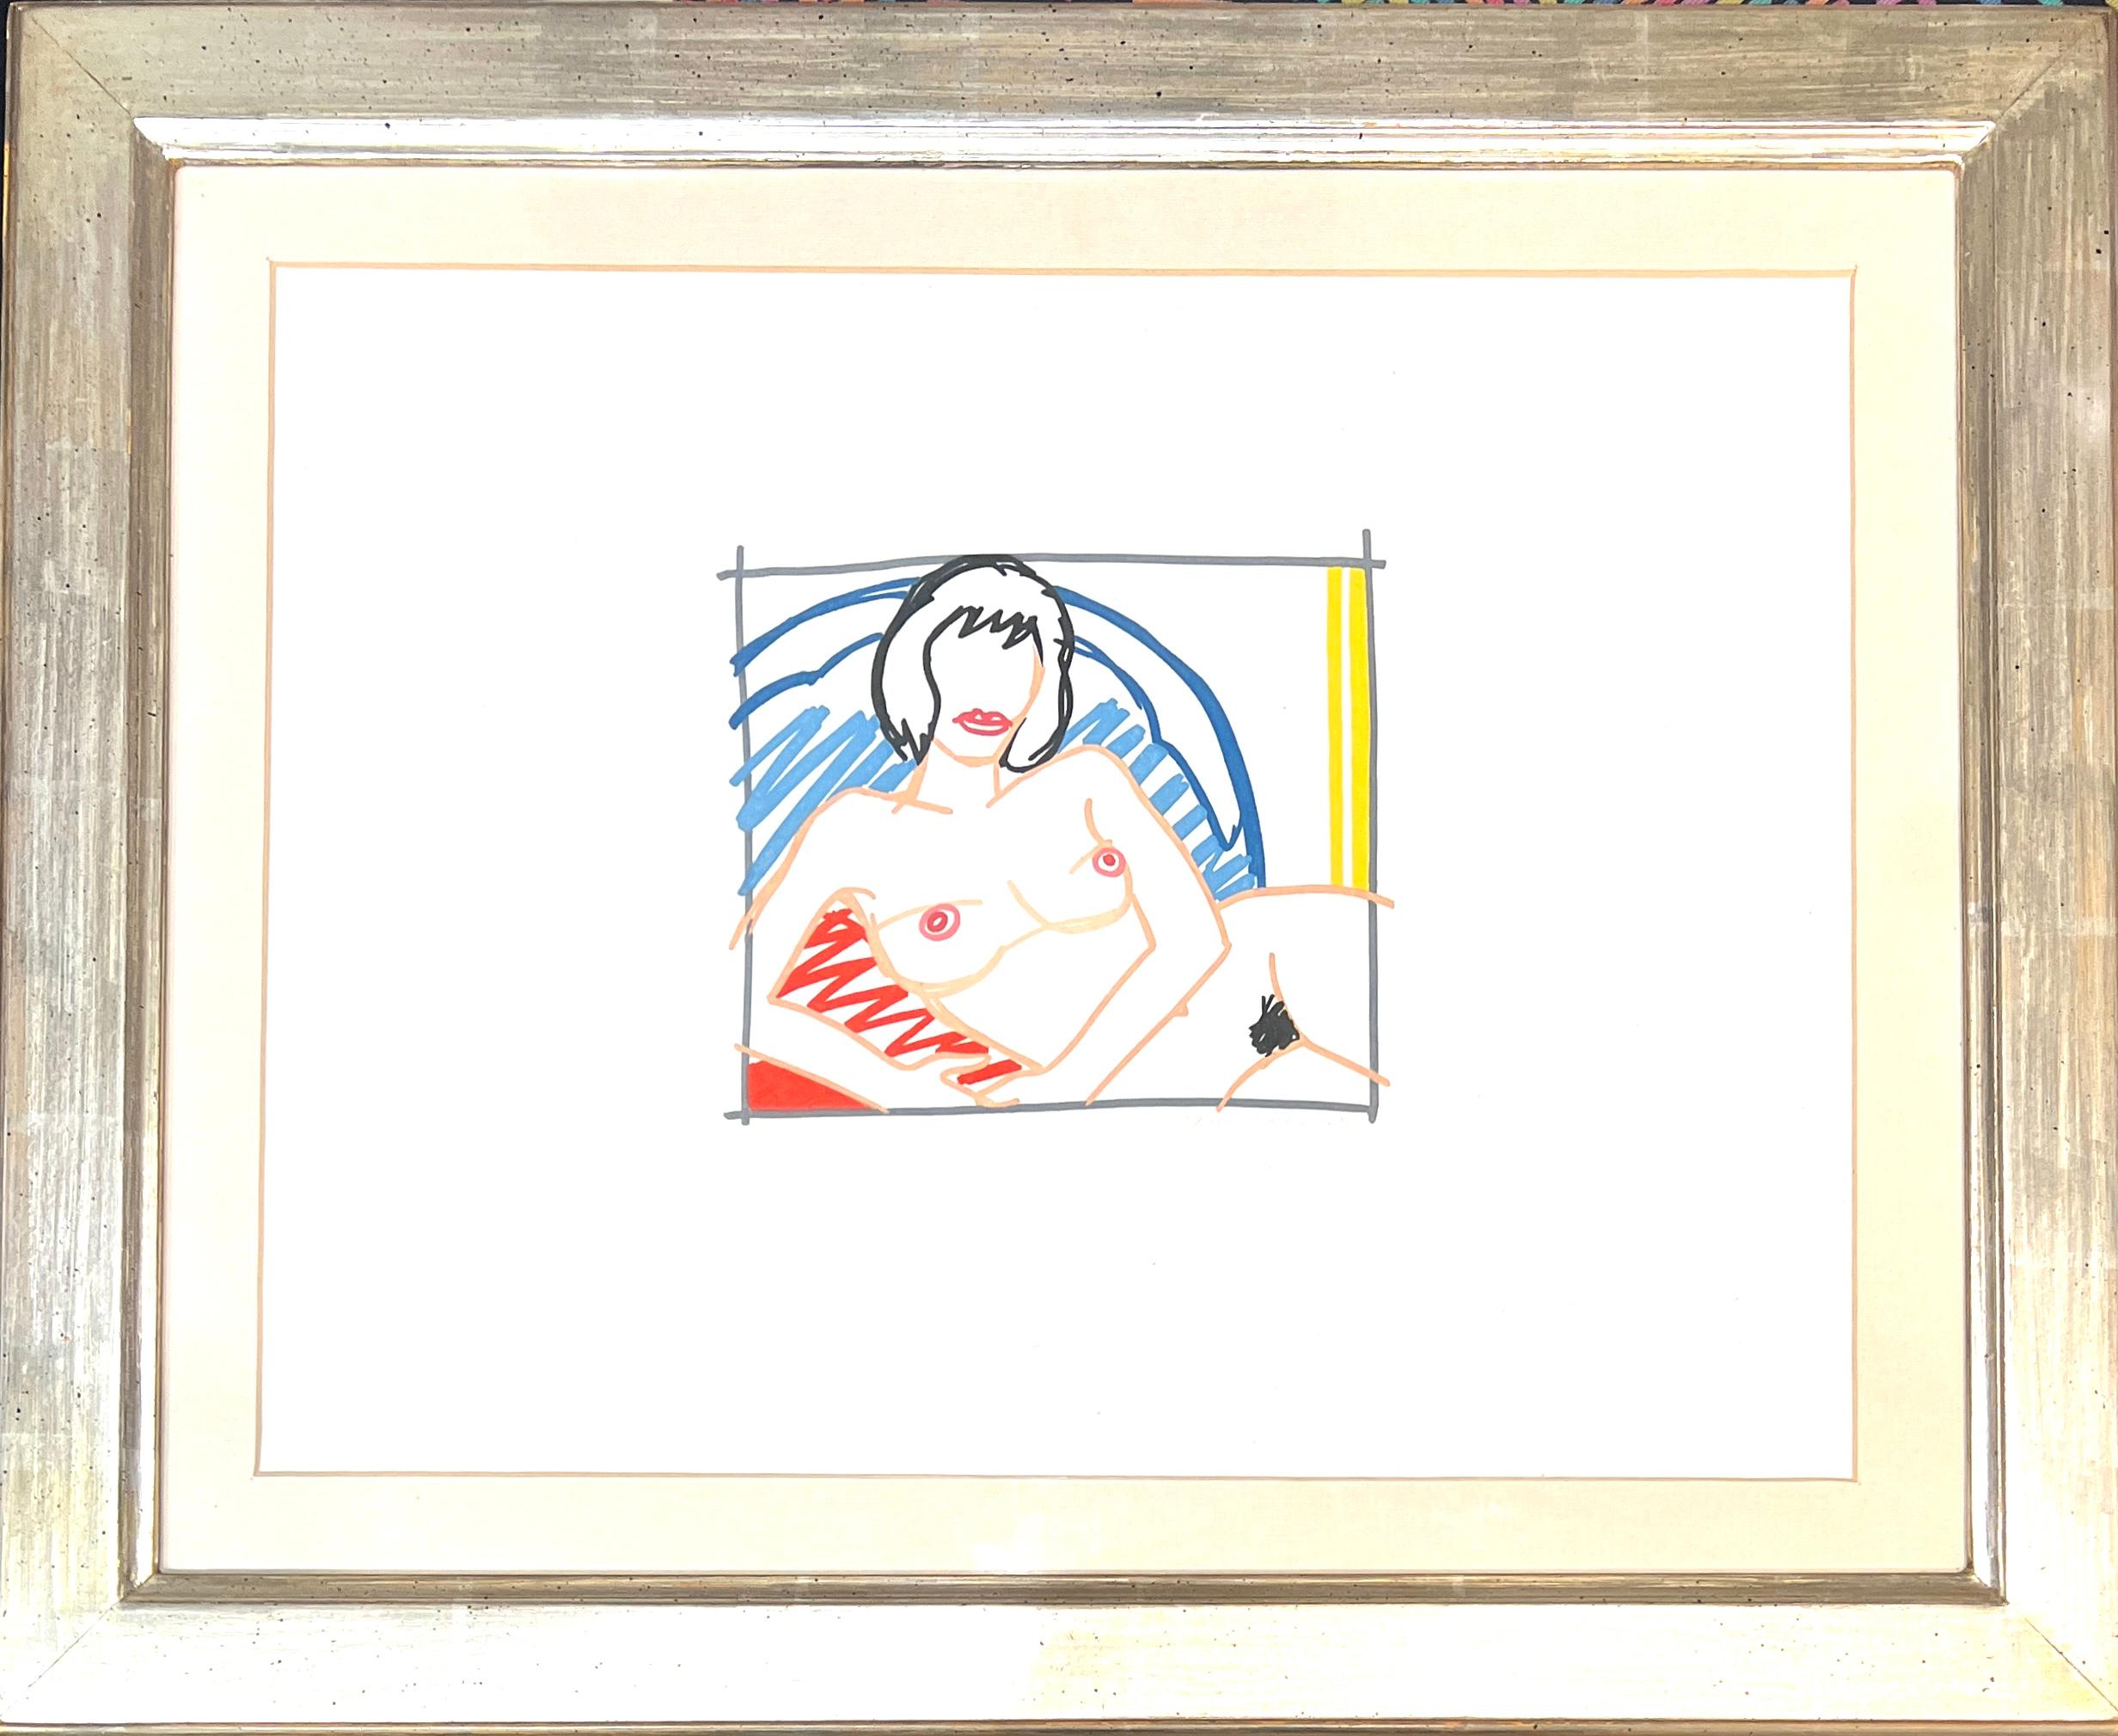 Monica Nude avec rideau jaune
Aquatinte en couleurs sur papier vélin, éditée en 1991
Edition limitée à 50 exemplaires
signée au crayon par l'artiste et numérotée 21/50 dans le coin inférieur droit
format du papier : 37,8 x 43,8cm (14 7/8 x 17